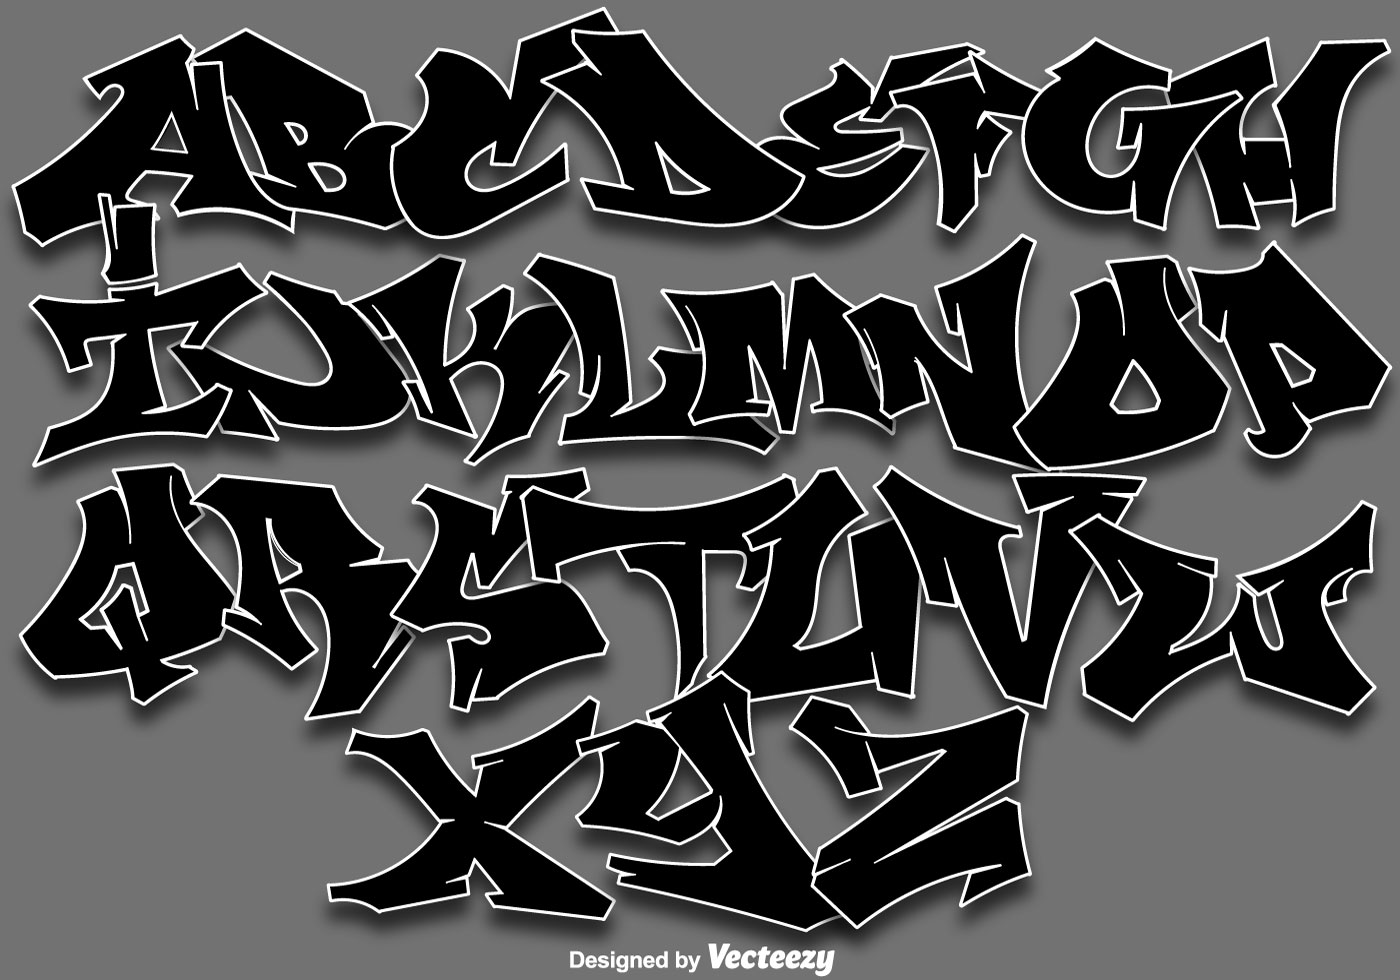 Vektor Graffiti Alphabet Buchstaben 150006 Vektor Kunst bei Vecteezy